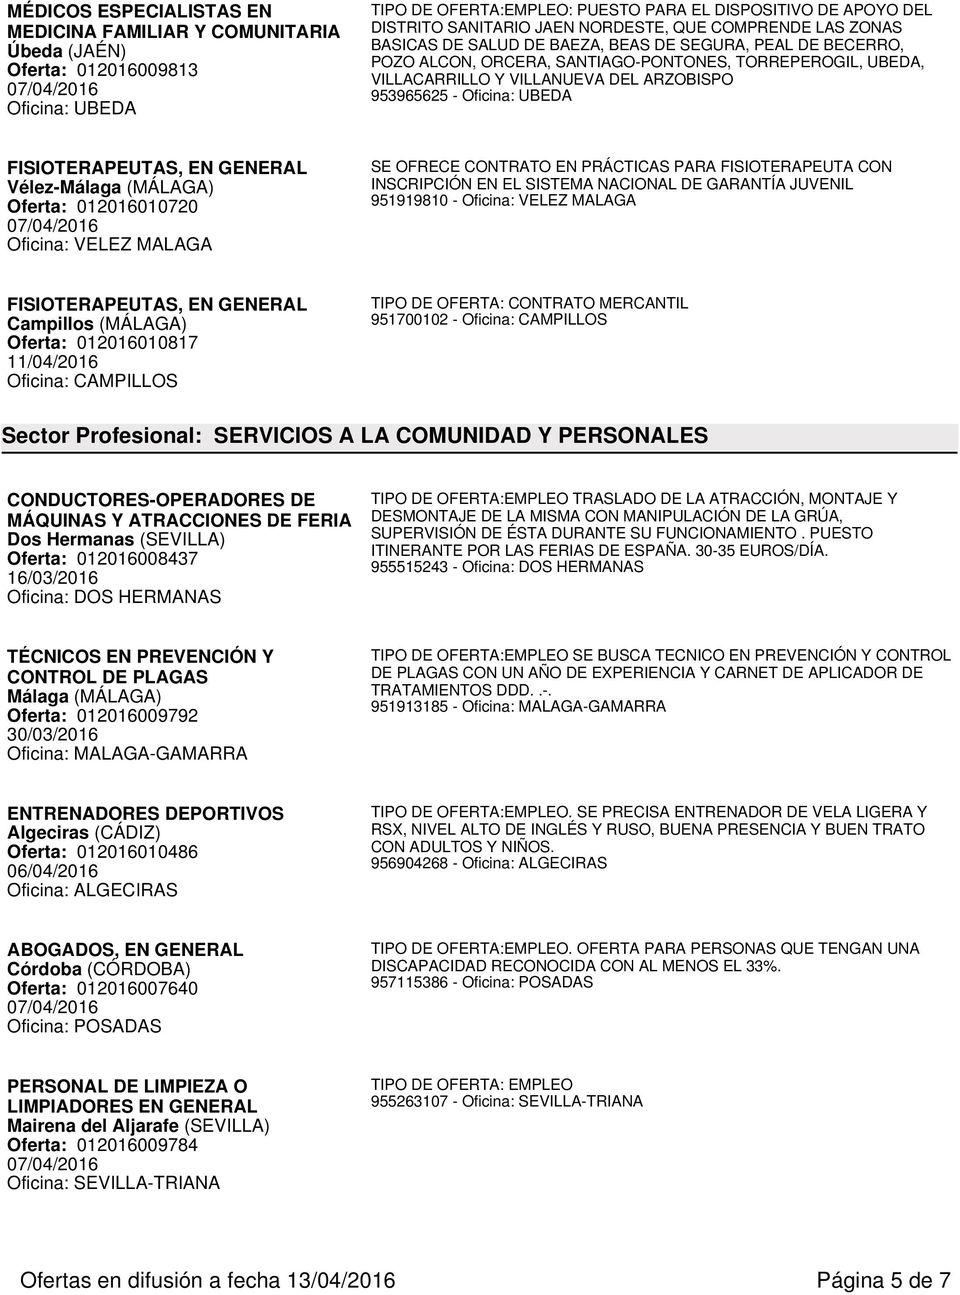 FISIOTERAPEUTAS, EN GENERAL Vélez-Málaga (MÁLAGA) Oferta: 012016010720 Oficina: VELEZ MALAGA SE OFRECE CONTRATO EN PRÁCTICAS PARA FISIOTERAPEUTA CON INSCRIPCIÓN EN EL SISTEMA NACIONAL DE GARANTÍA